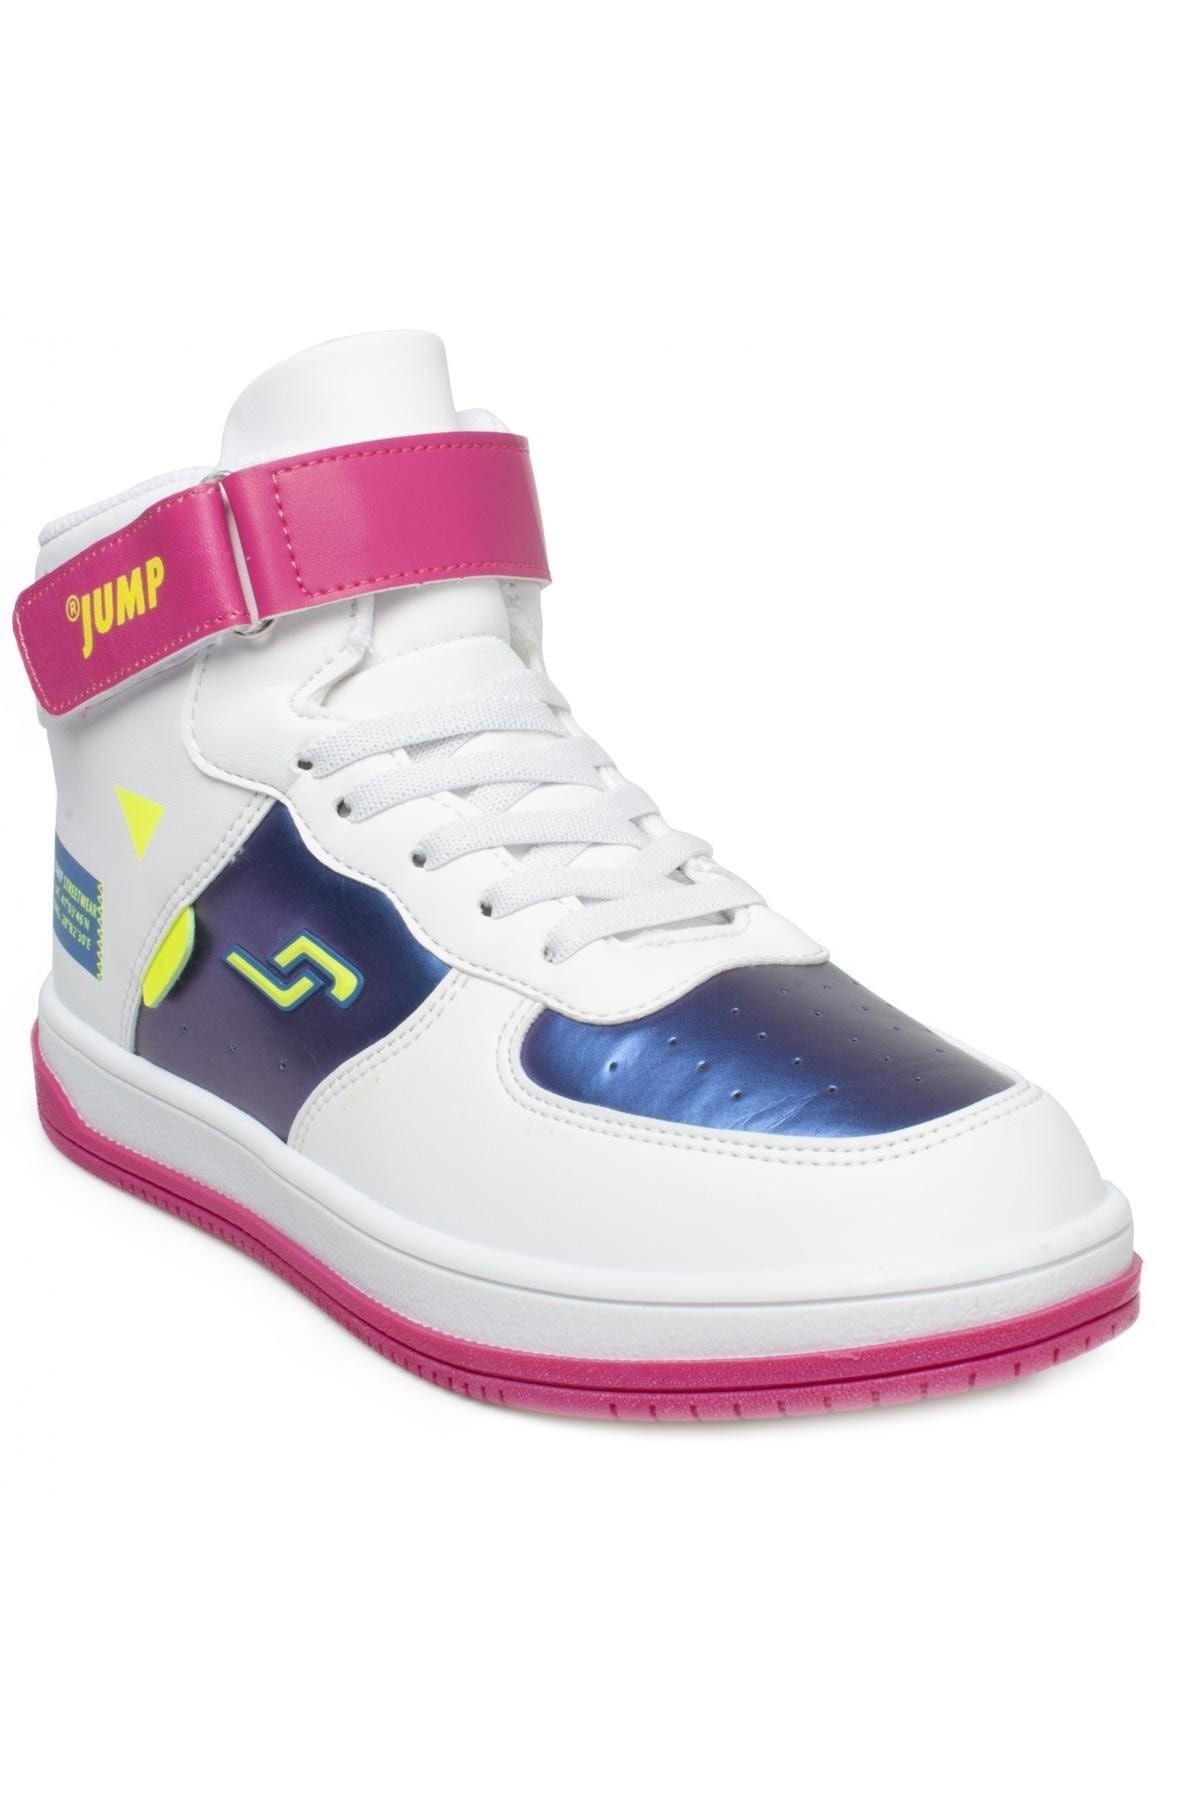 Jump 27834 Beyaz - Fuşya Kız Çocuk Bilekli Cırtlı Sneaker Spor Ayakkabı